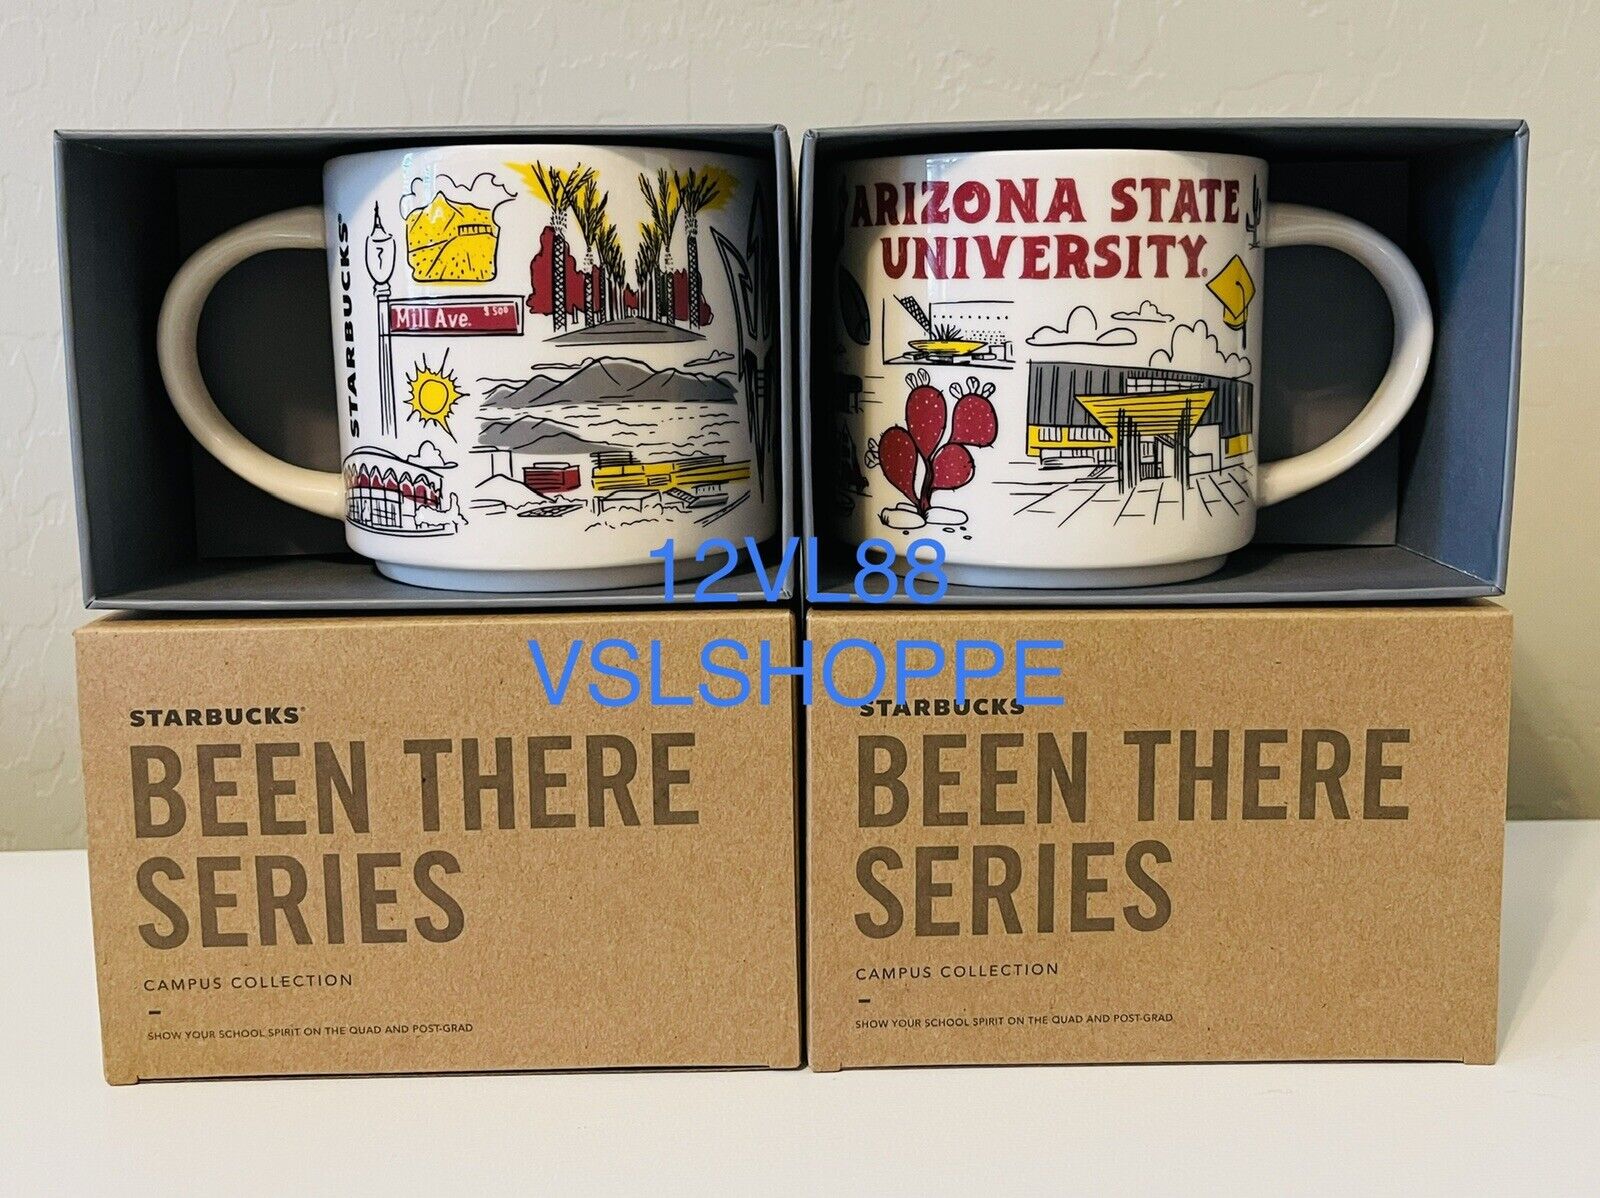 BRAND NEW - Starbucks - Been There Series - Arizona State University - ASU - Mug